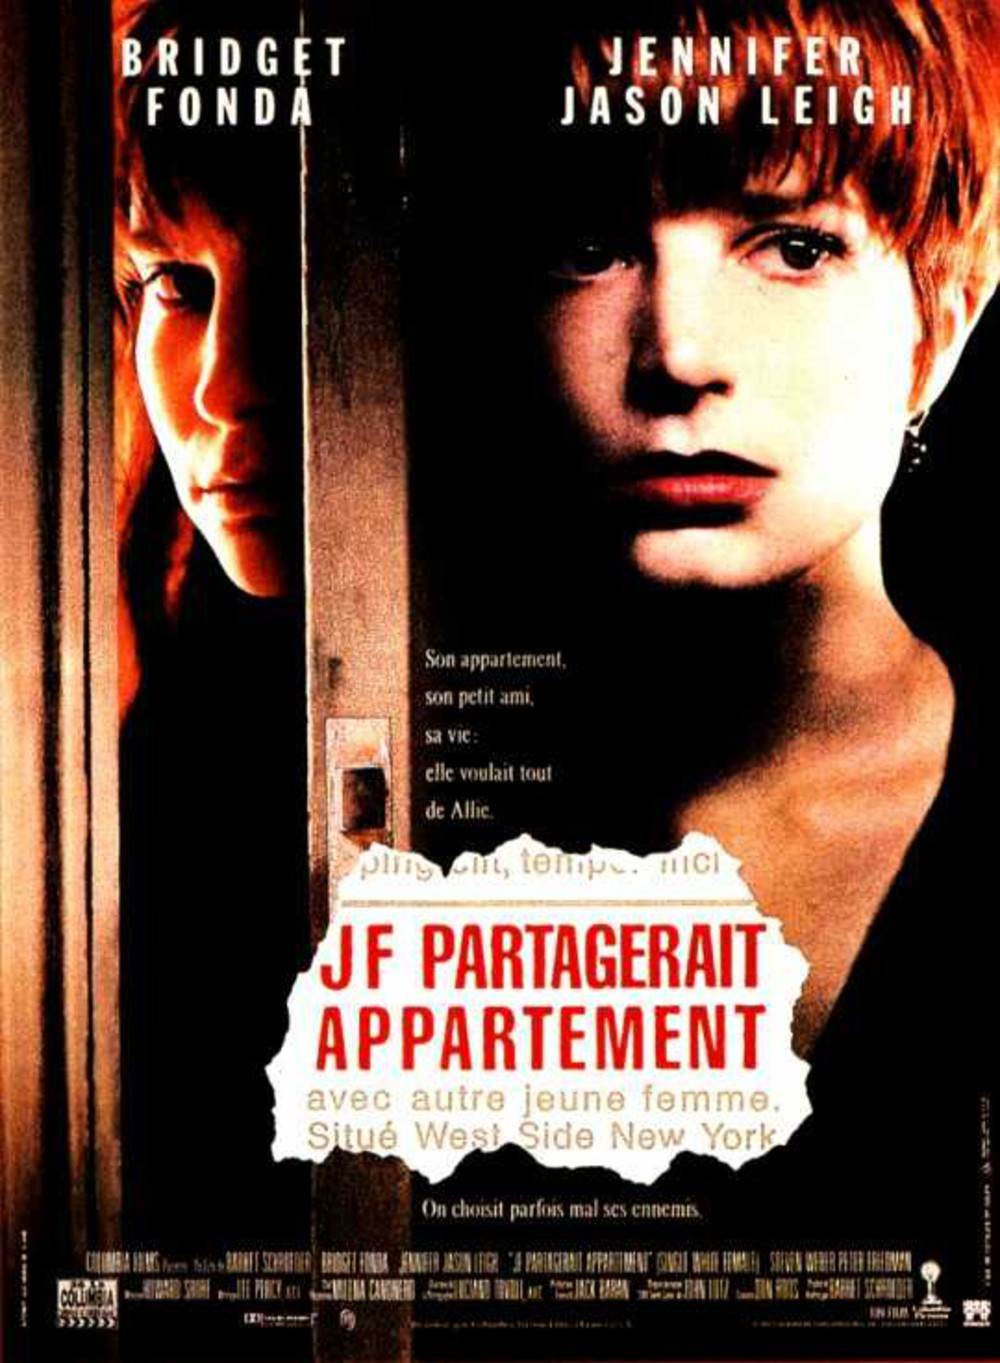 affiche du film J.F. partagerait appartement